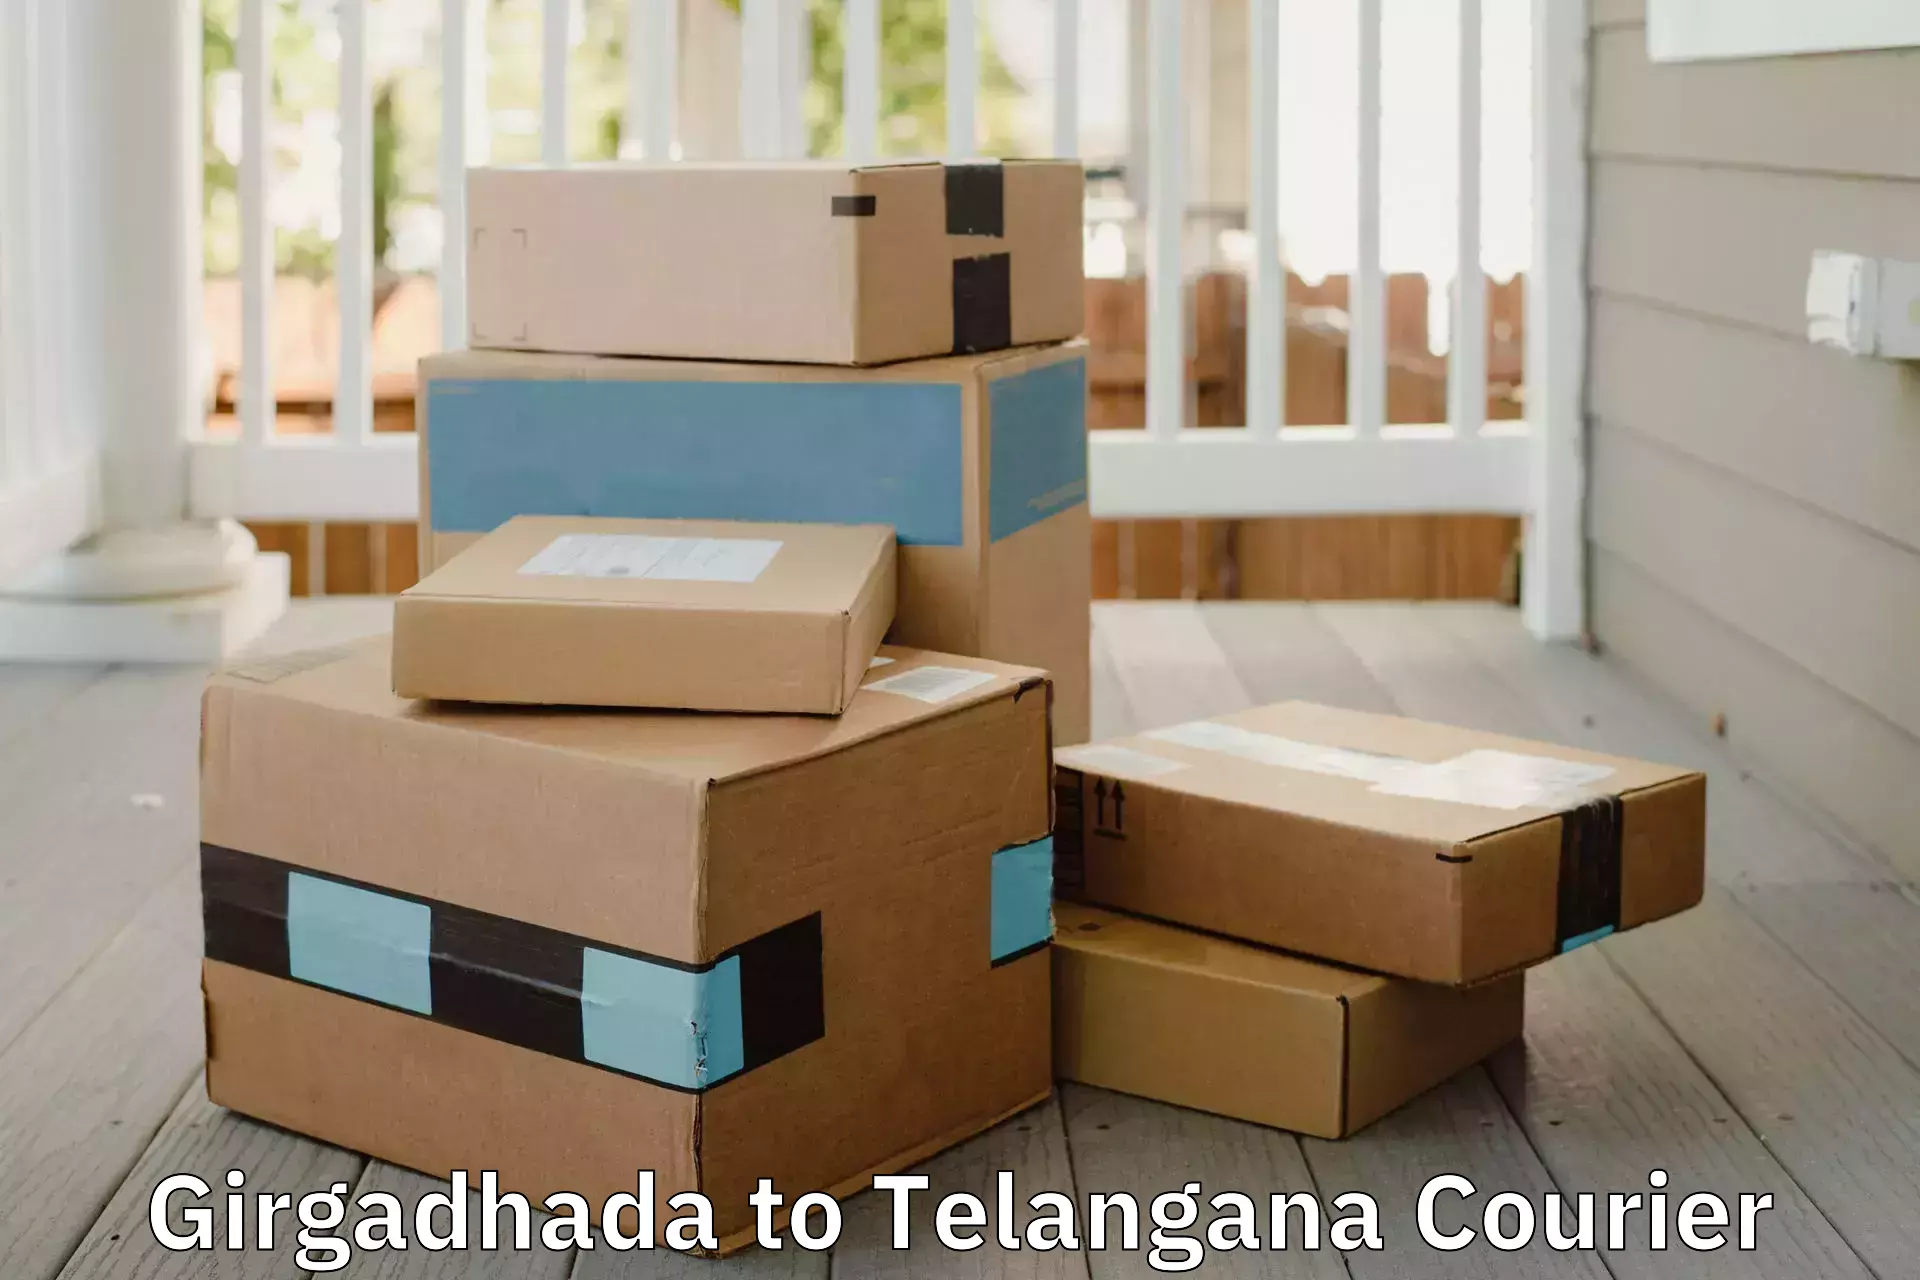 Professional furniture moving in Girgadhada to Tadoor